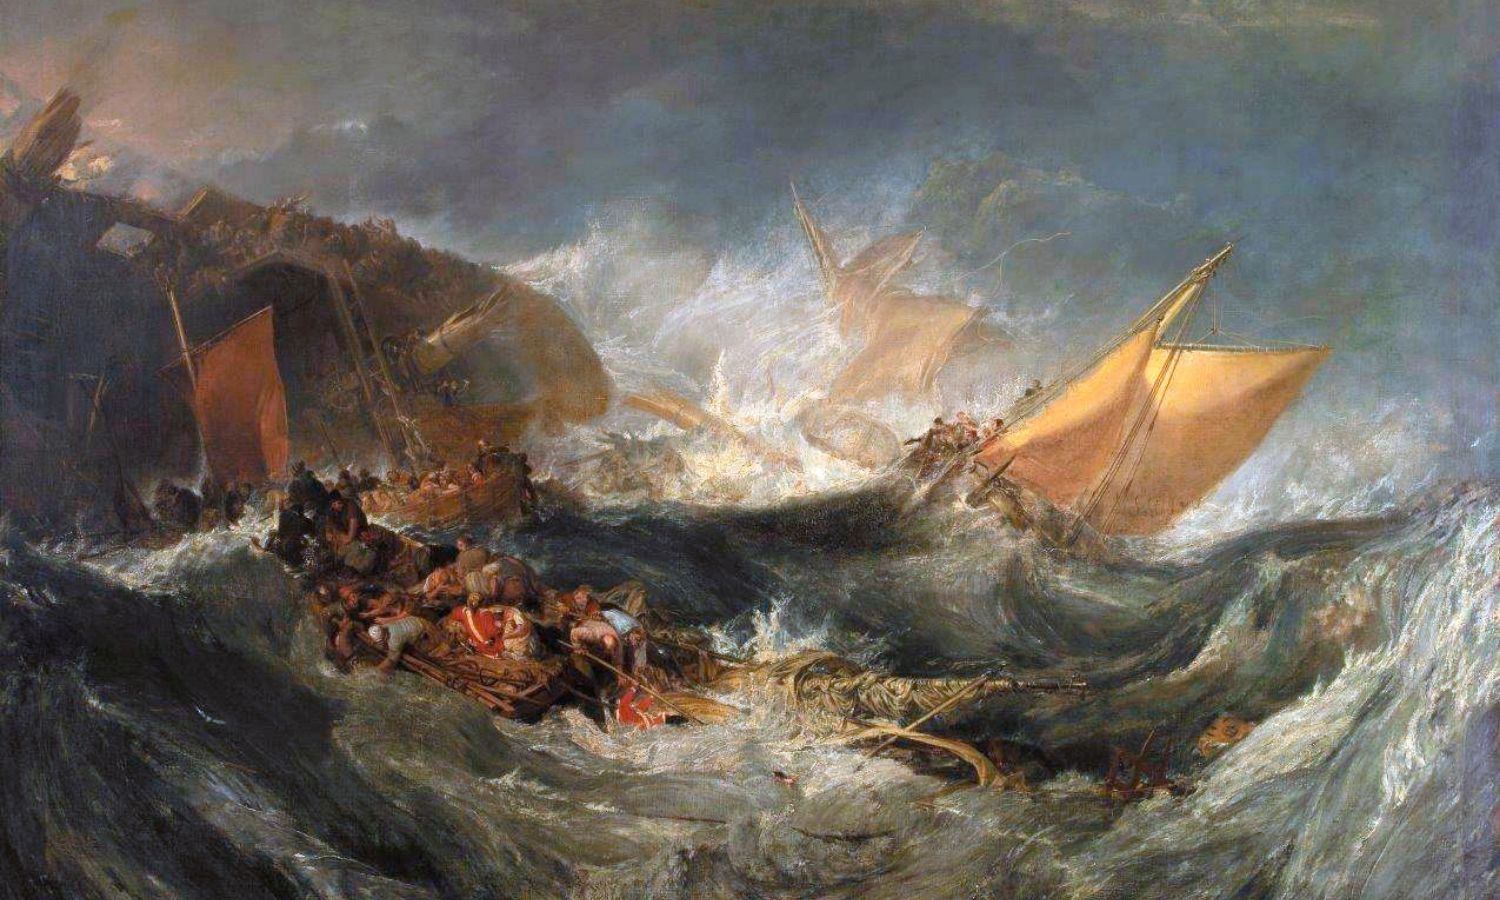 OTD in 1810: The British ship HMS Minotaur sunk